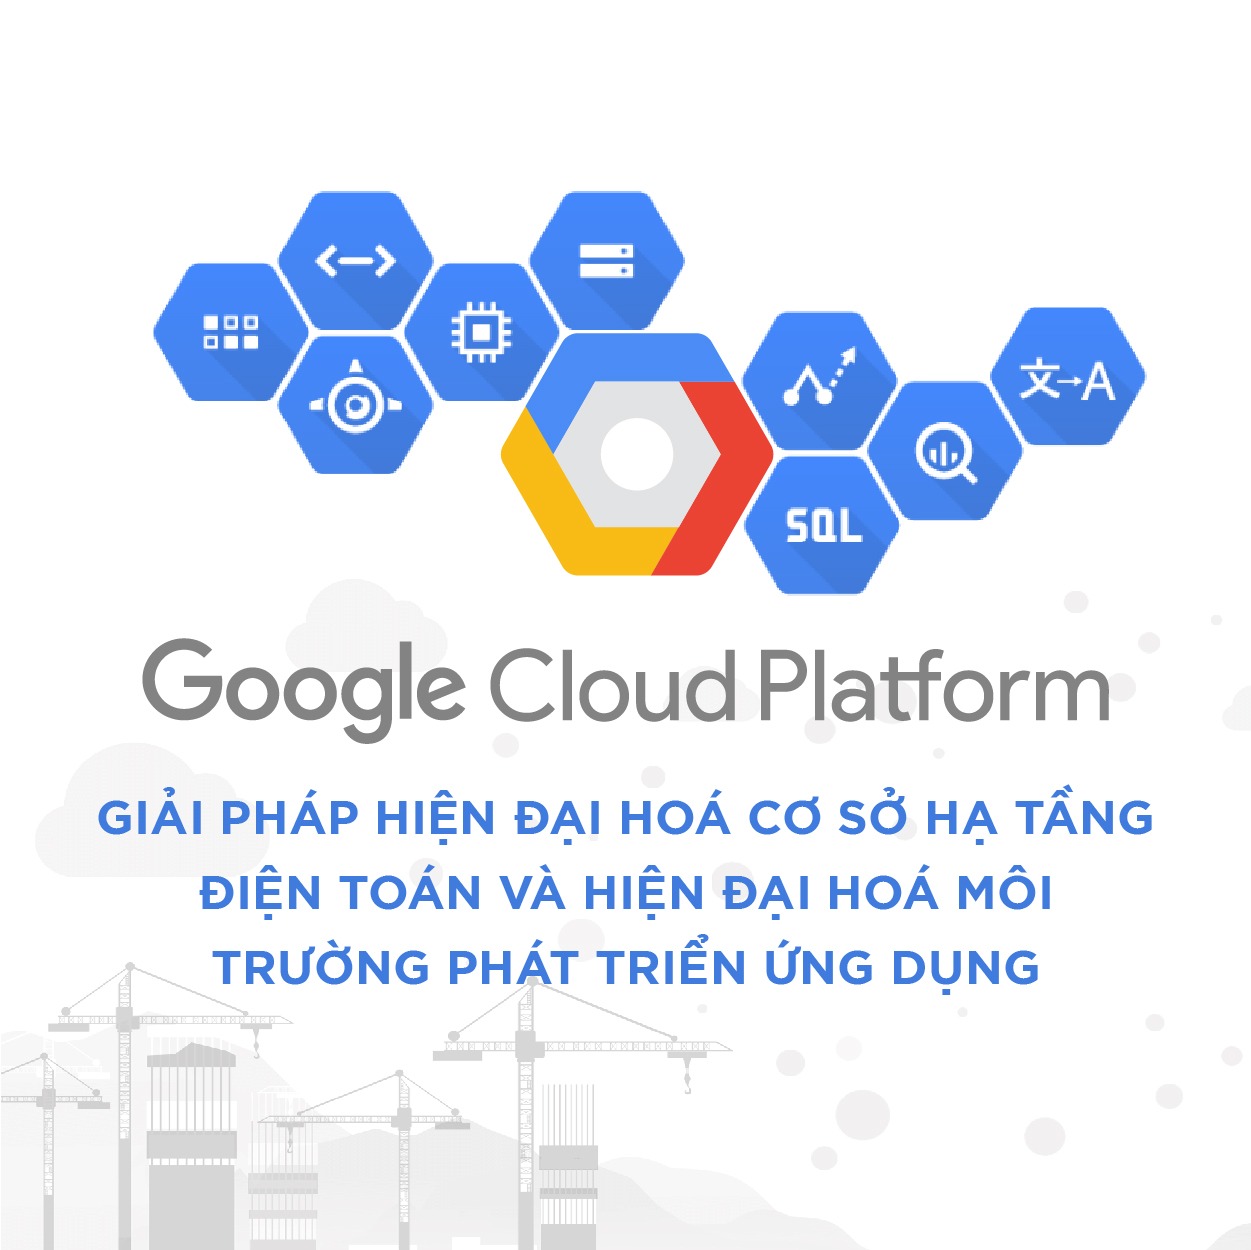 Google Cloud Hỗ Trợ Xây Dựng Nhanh Hạ Tầng ứng Dụng Dựa Trên Nghiên Cứu Chuyên Sâu